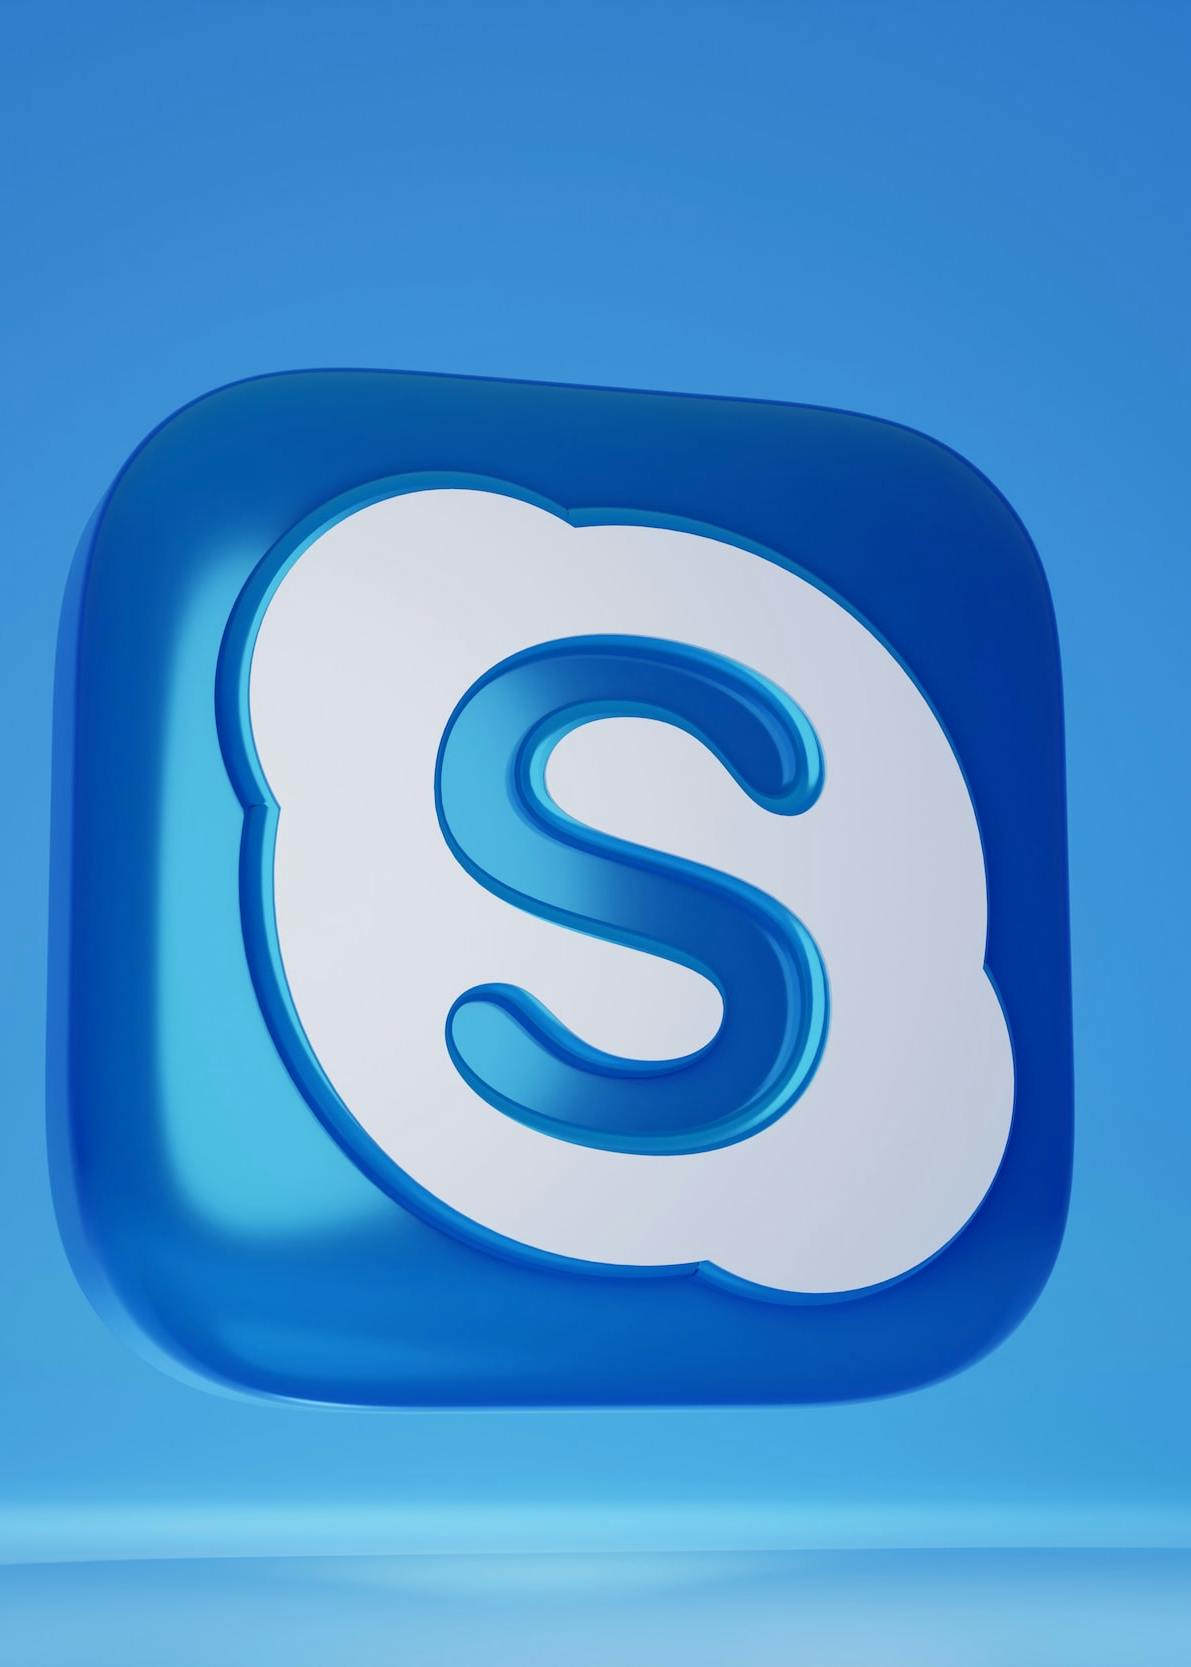 Logo 3D di Skype blu e bianco su sfondo azzurro.